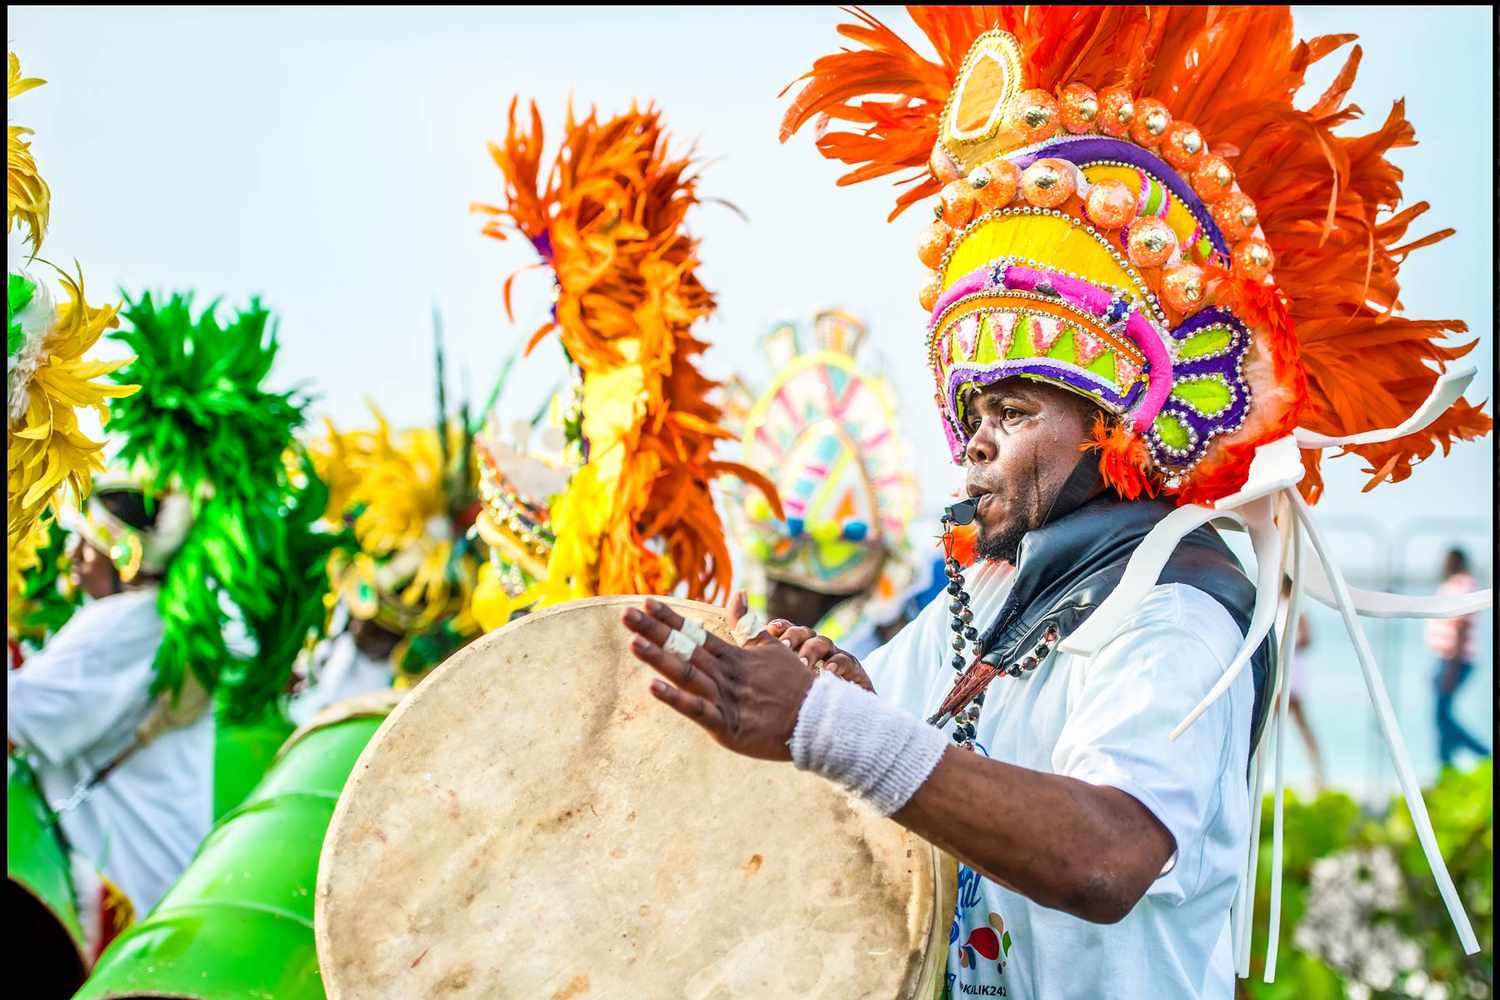 TAL-junkanoo-carnival-drummers-bahamas-lead-BHMSJUBILEE0123-4782367ff6e54f7fb4b4490f2e8fdbfb.jpg